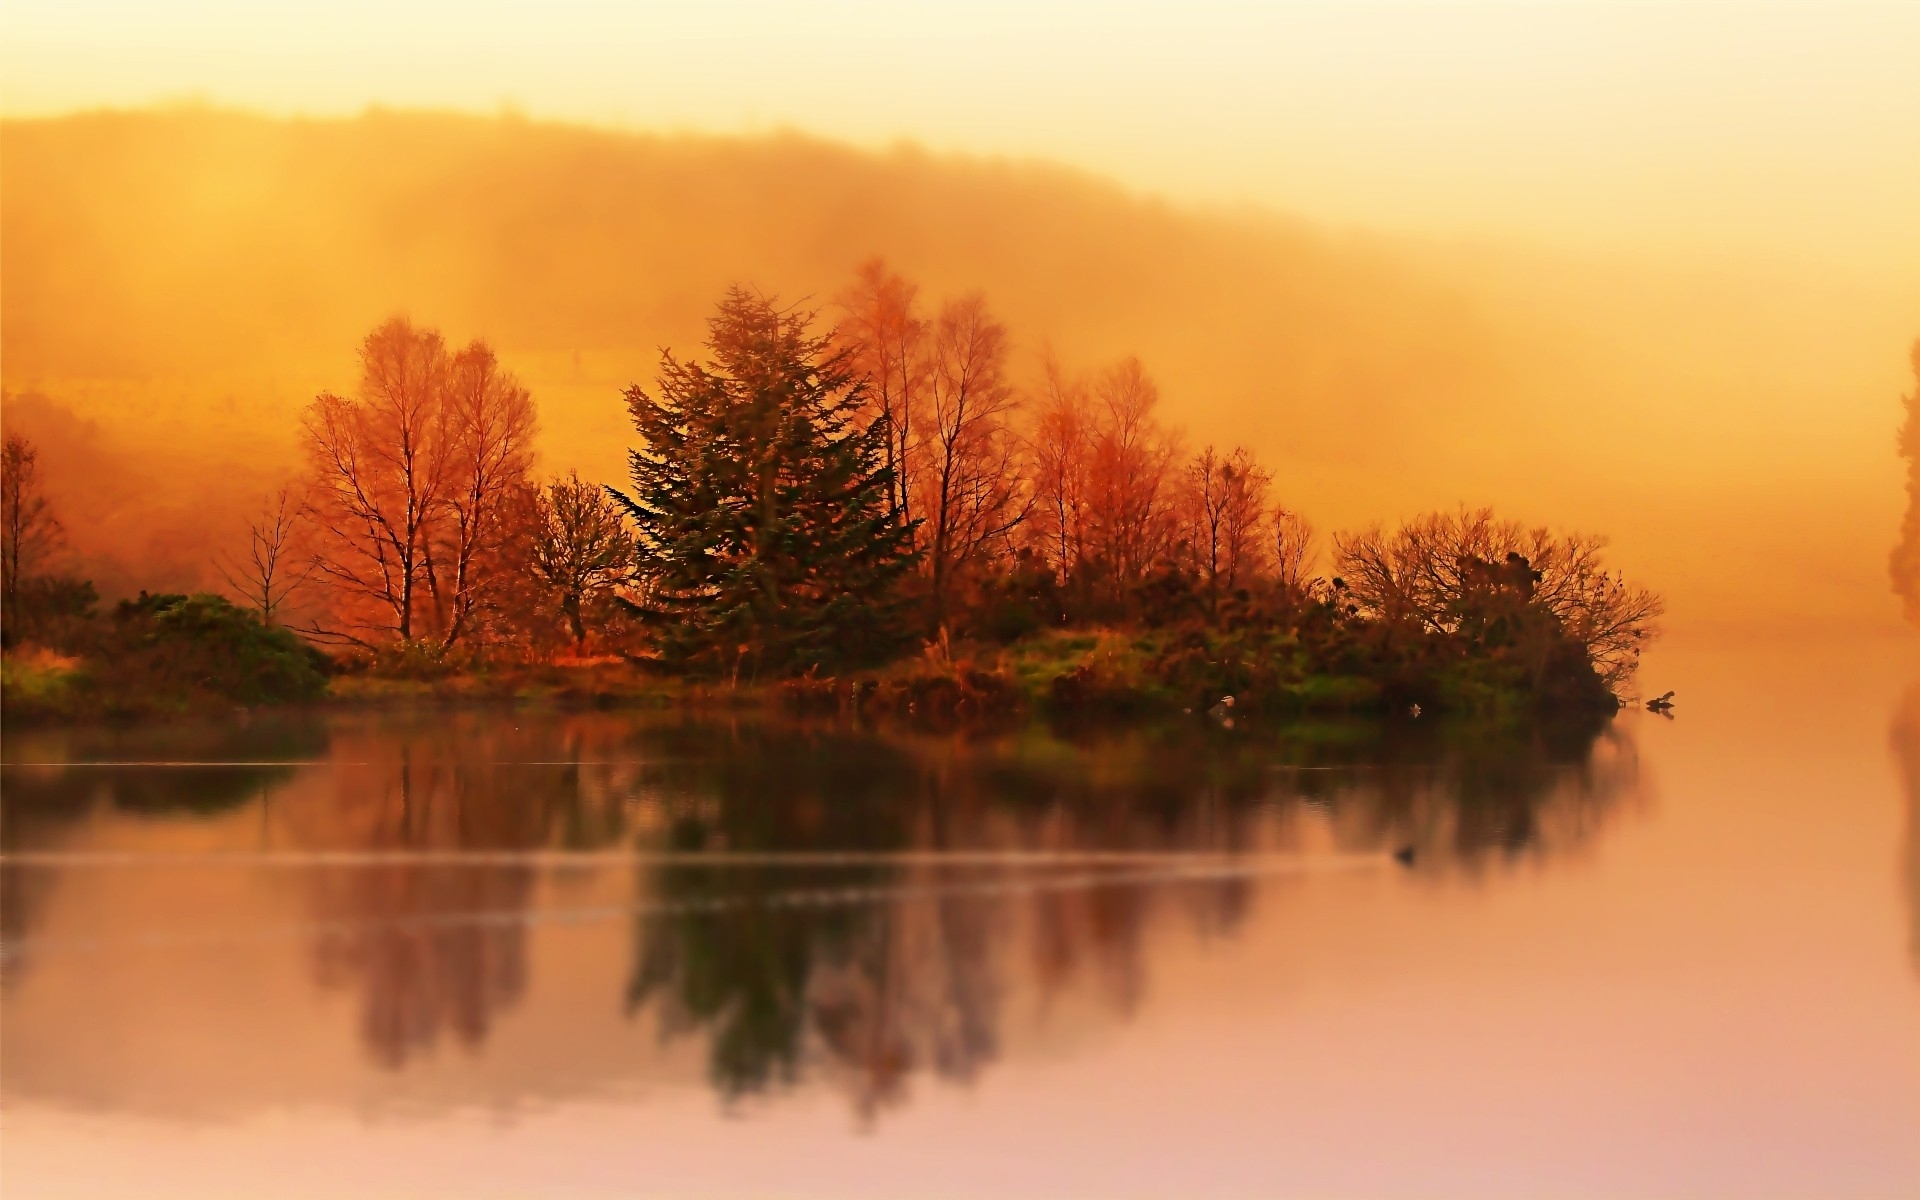 Mùa thu: Mùa thu là một trong những thời điểm đẹp nhất trong năm, khi mà cảnh sắc của thiên nhiên trang trí đẹp hơn với sắc vàng, đỏ, và cam. Bạn có thể nhìn thấy những cành cây và lá rơi, và tận hưởng cảm giác ấm áp, thoải mái trong không khí se lạnh. Hãy xem những bức ảnh về mùa thu và cảm nhận sự đẹp đẽ và tuyệt vời của nó.